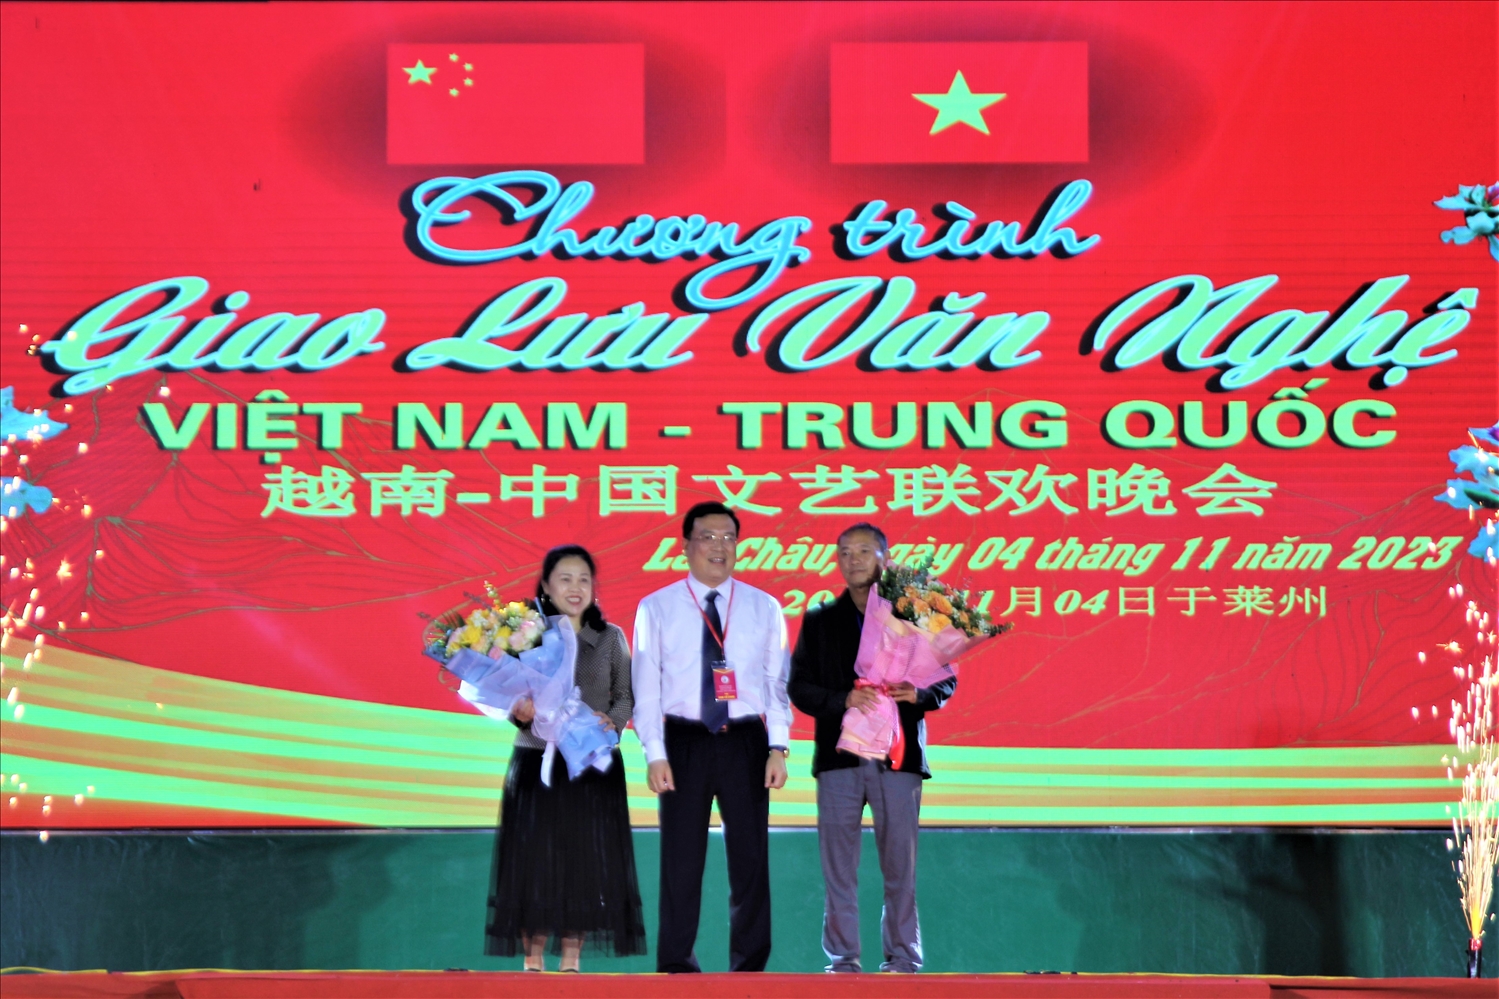 Ông Lương Chiến Công - Giám đốc Sở Văn hóa, Thể thao và Du lịch tỉnh Lai Châu - tặng hoa cho hai đoàn nghệ thuật tham gia giao lưu biểu diễn